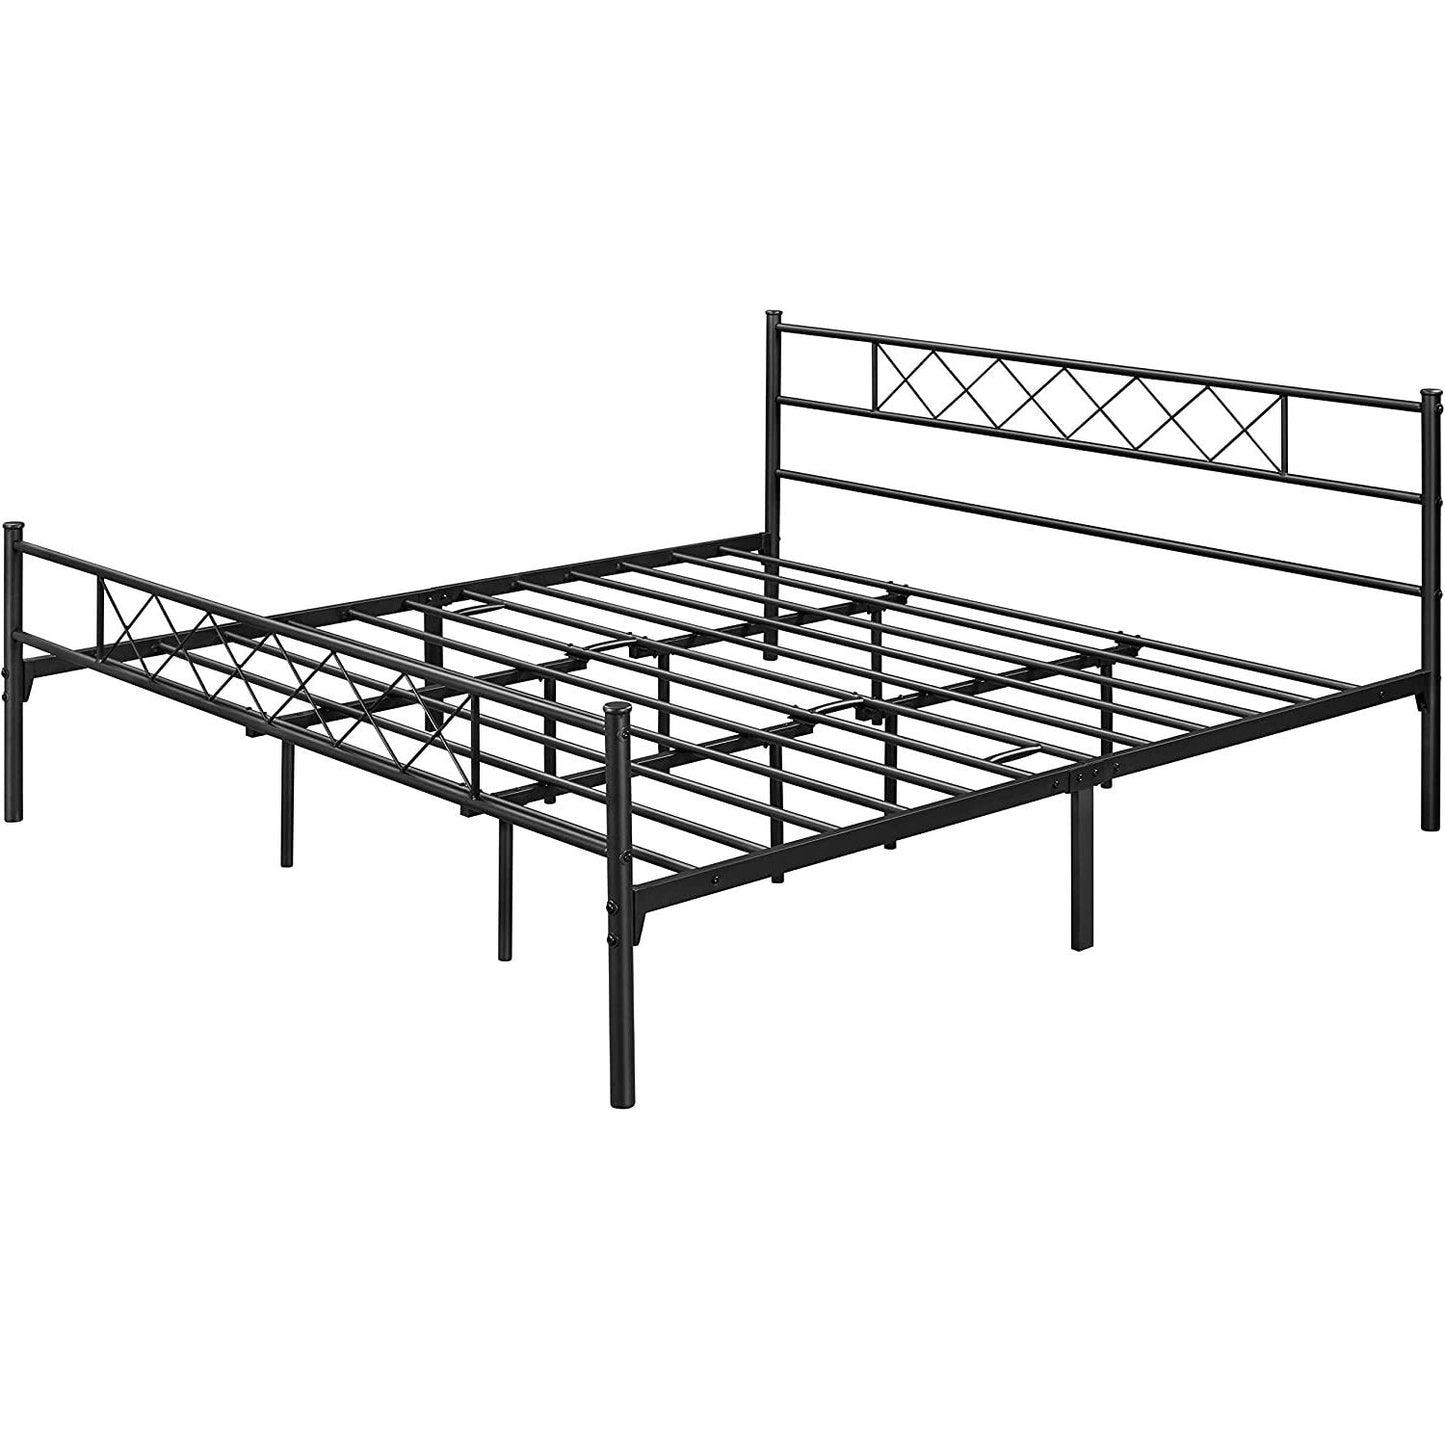 Bedroom > Bed Frames > Platform Beds - King Size Traditional Powder Coated Slatted Metal Platform Bed